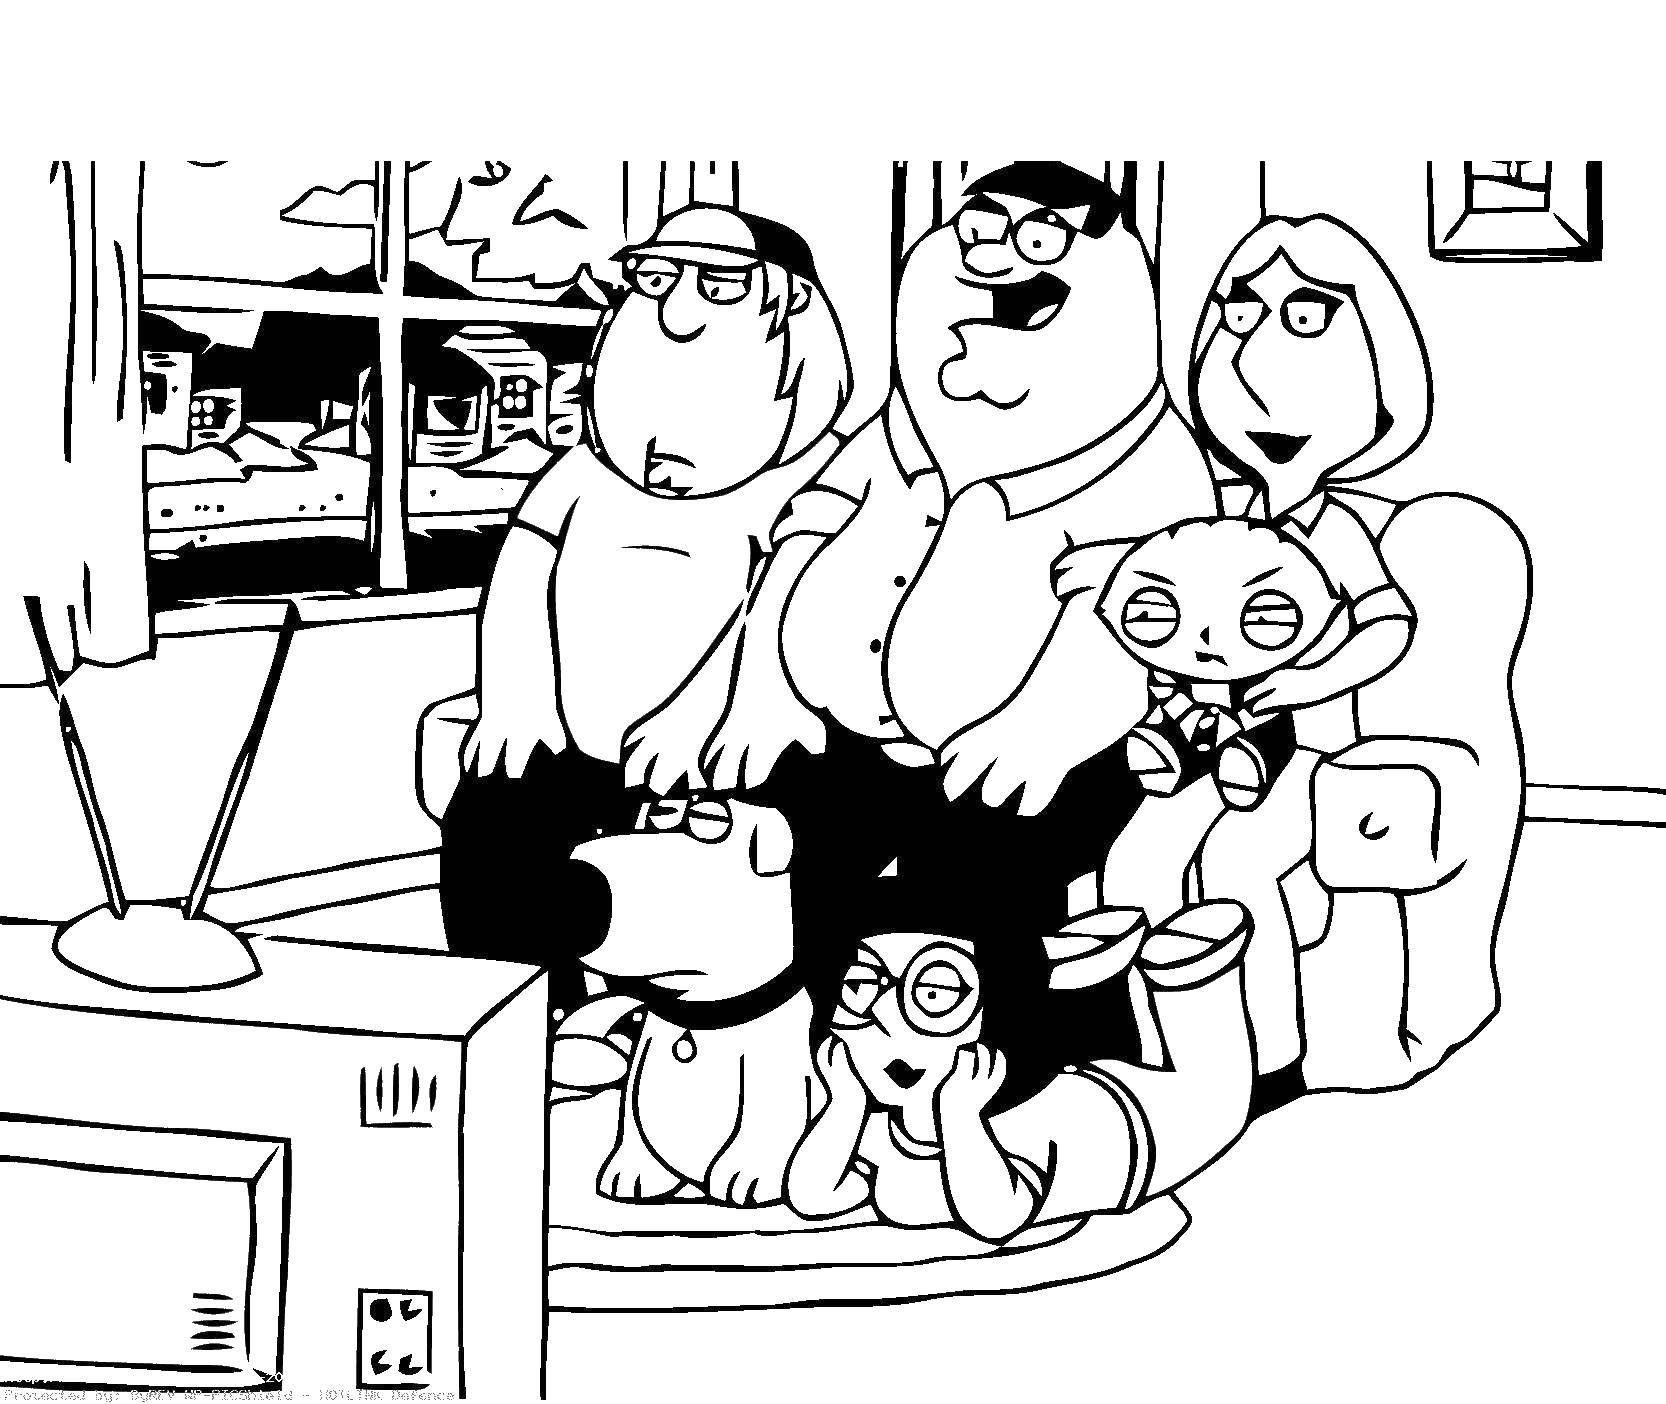 Coloring Family guy. Category cartoons. Tags:  cartoons, family Guy.